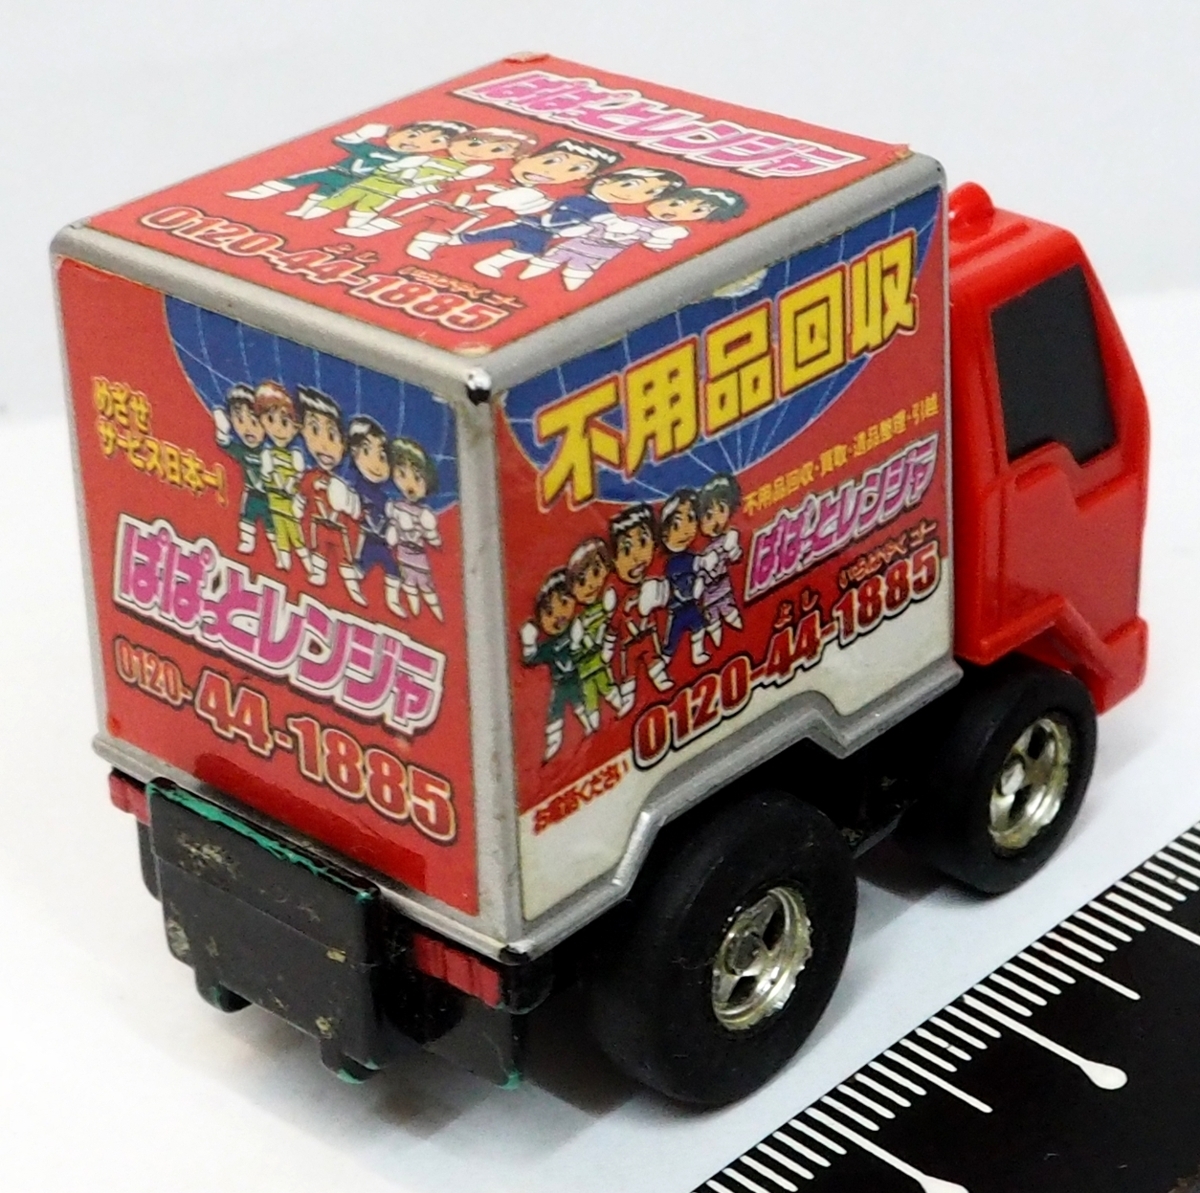  не продается Choro Q[ не сопутствующие товары восстановление . вдруг Ranger грузовик ] pull-back машина # Takara [ б/у * корпус только ] включая доставку 